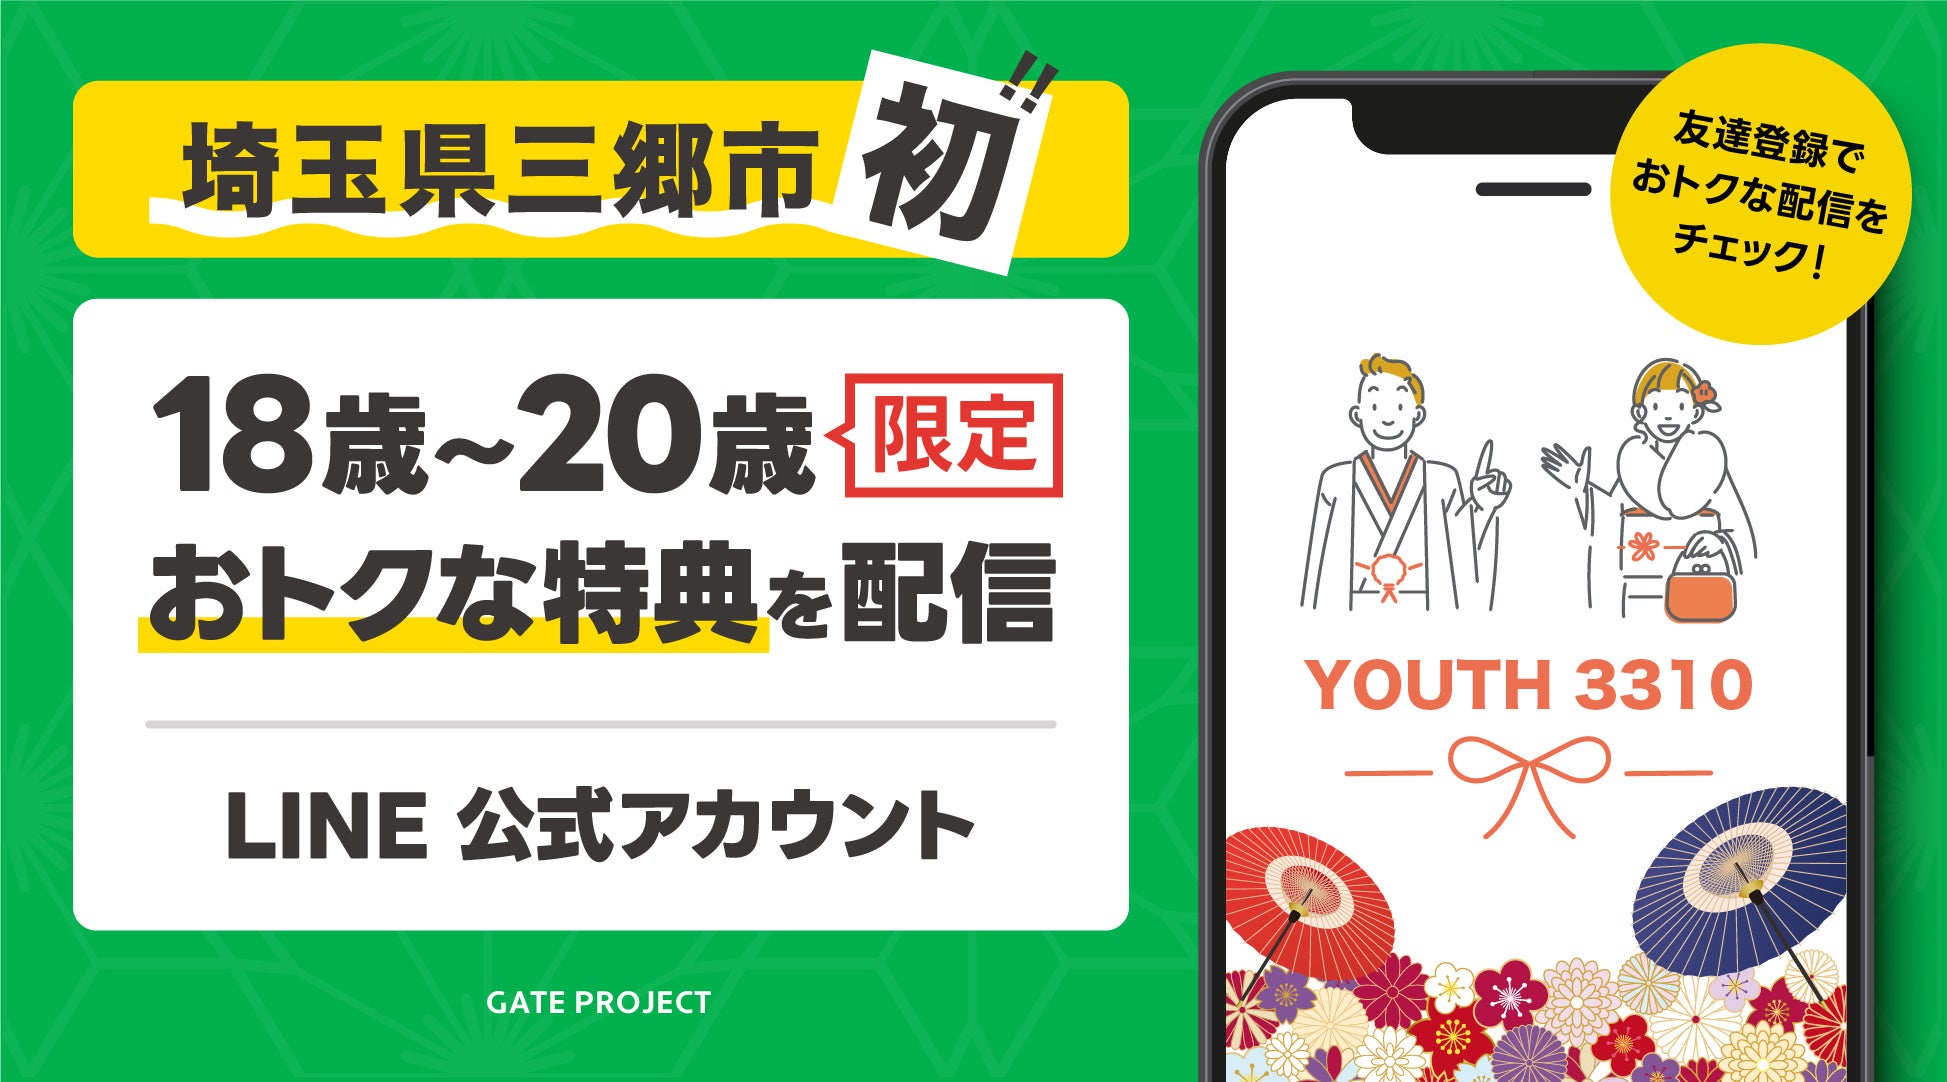 【埼玉県三郷市初】新成人を対象に、市内の飲食店等で使える特典を配信するLINE公式アカウント『YOUTH 3310』をリリースしました。のサブ画像1